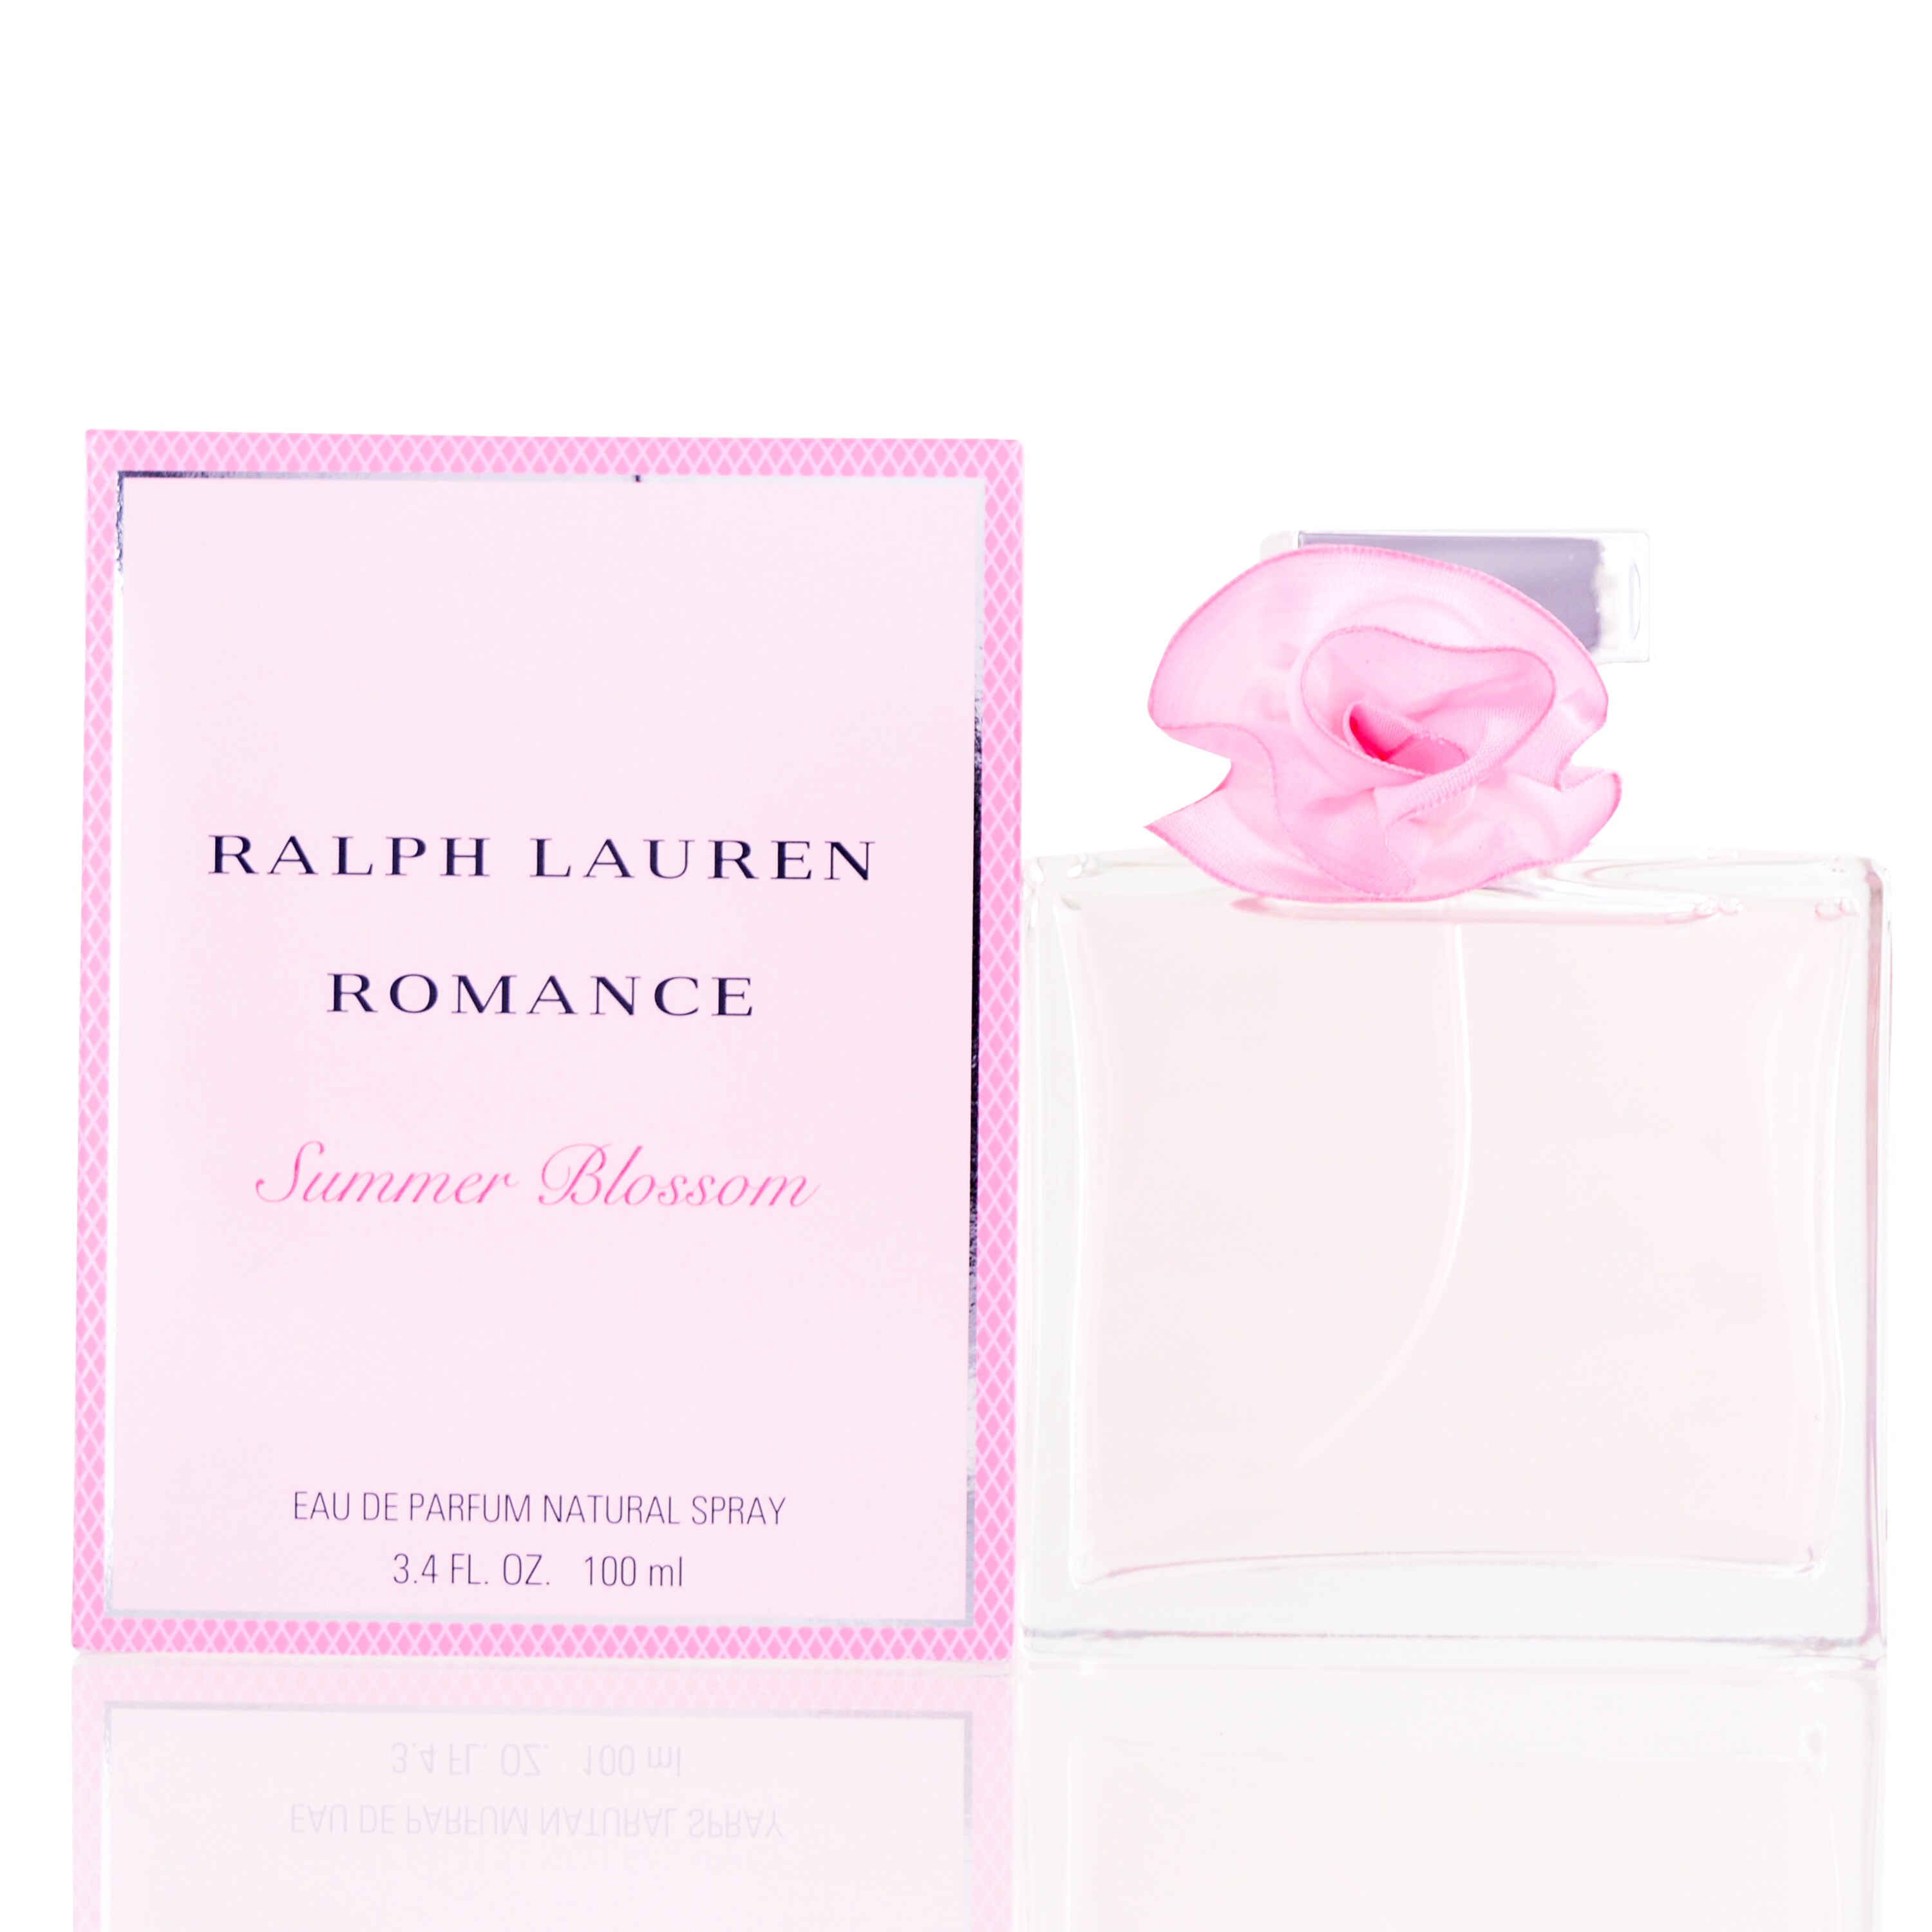 ralph lauren perfume romance summer blossom